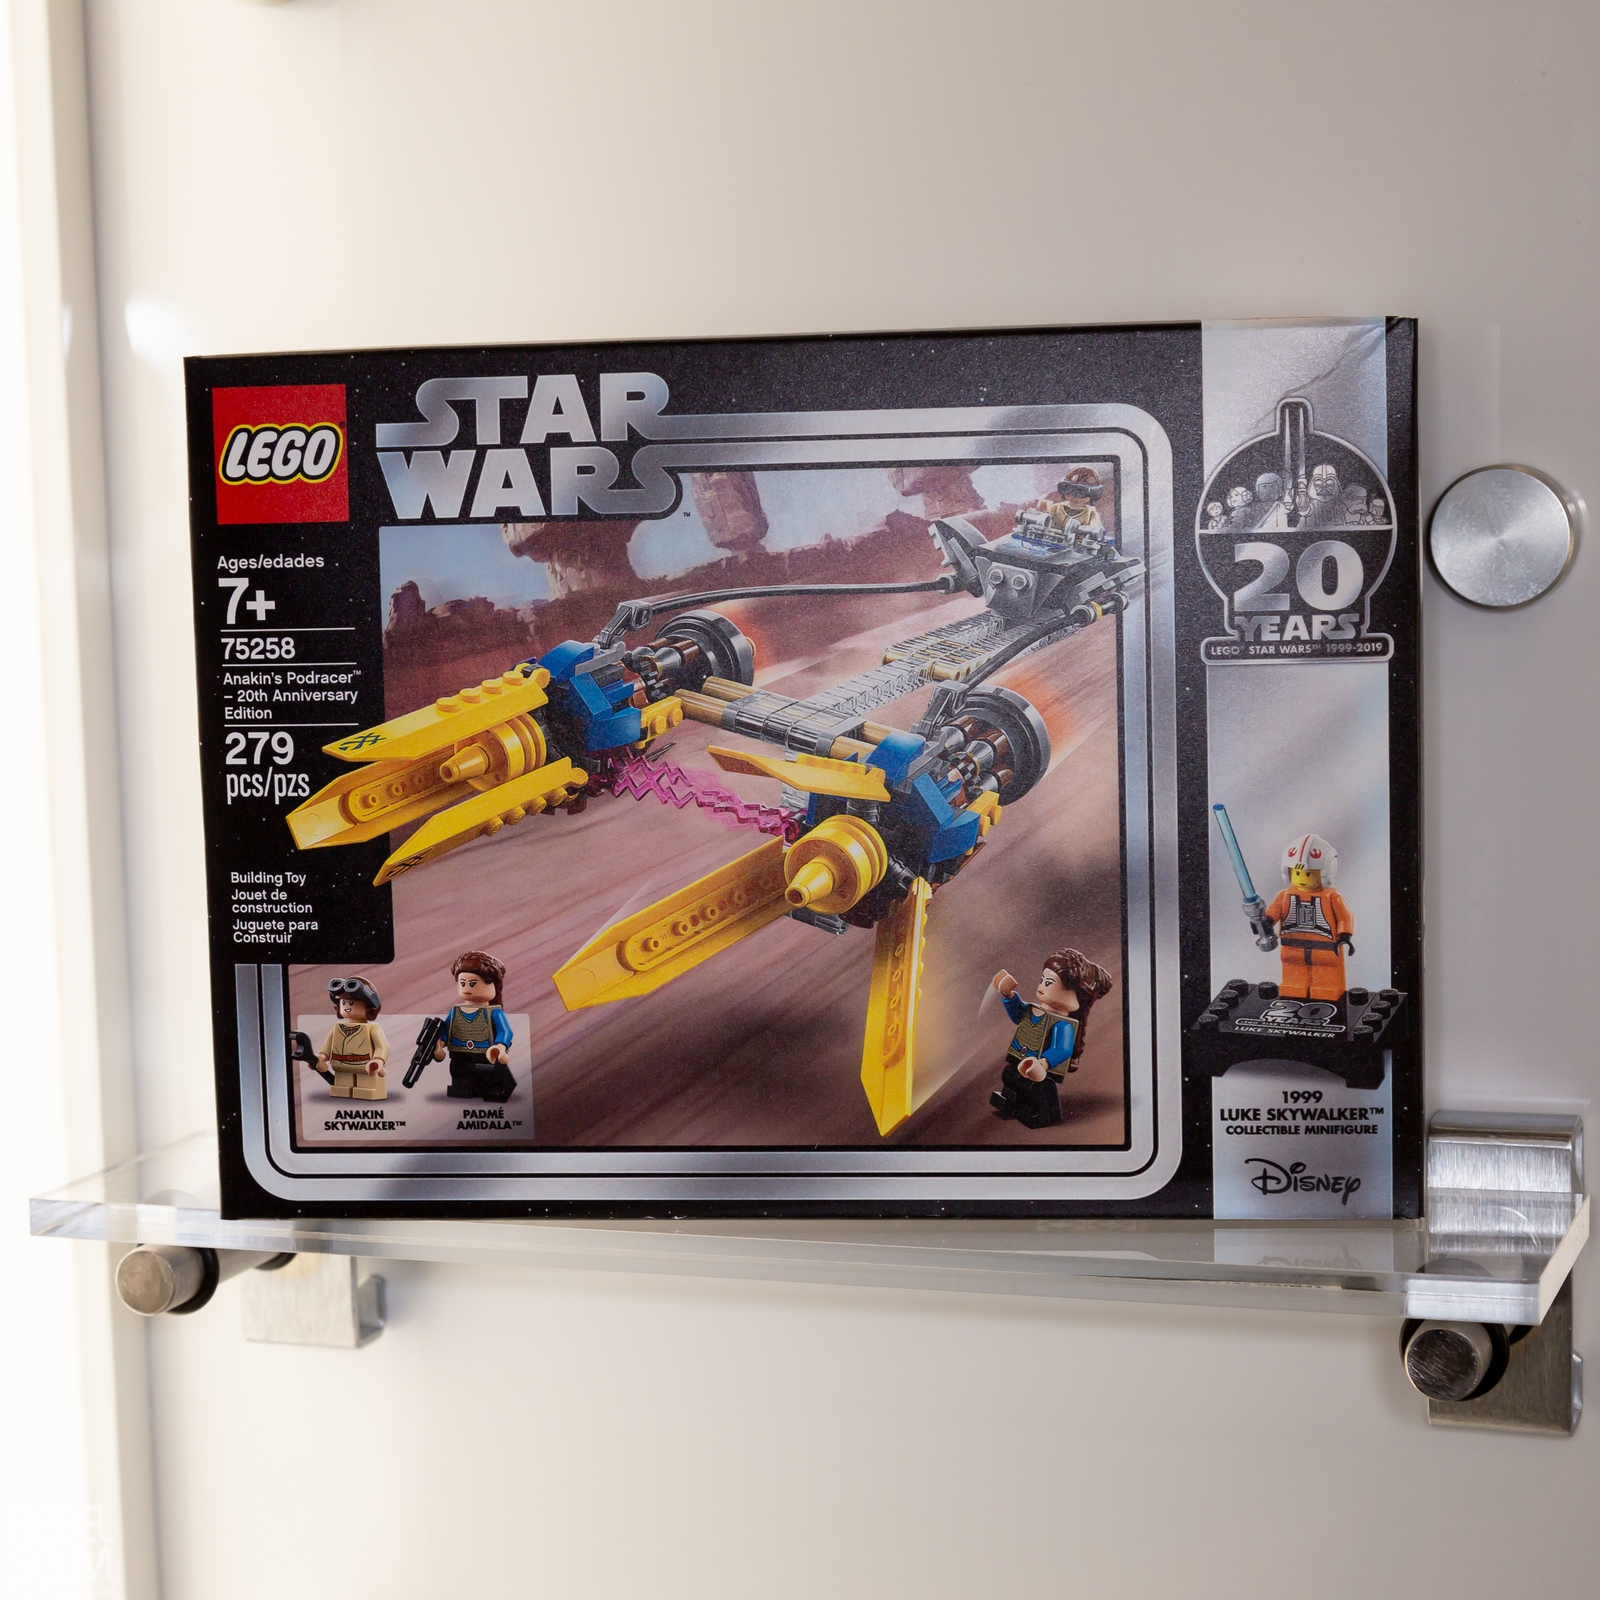 Toy-Fair-New-York-2019-Star-Wars-LEGO-010.jpg